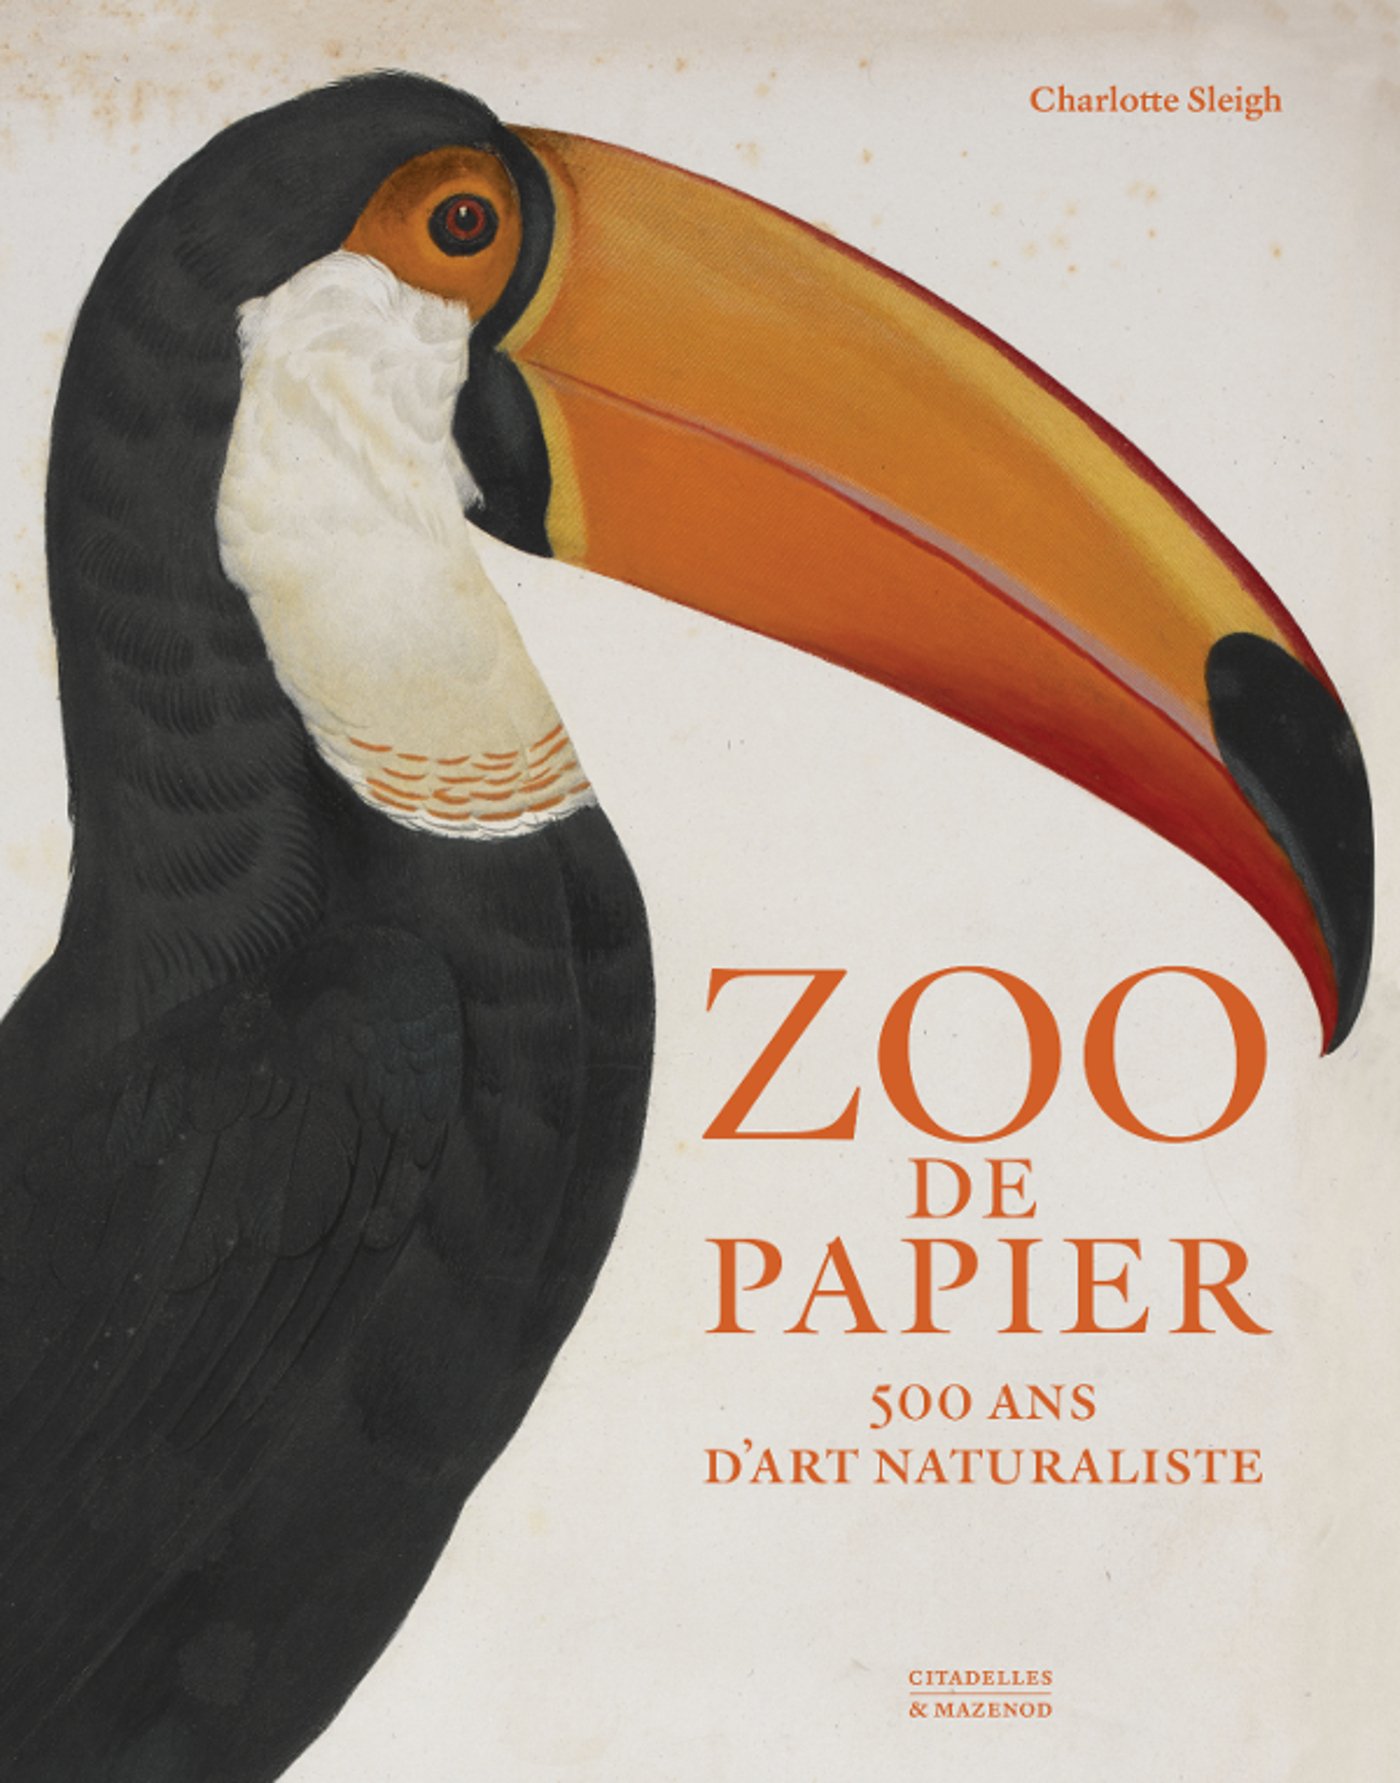 SLEIGH C. - Zoo de papier. 500 ans d'art naturaliste, 2017, 256 p.